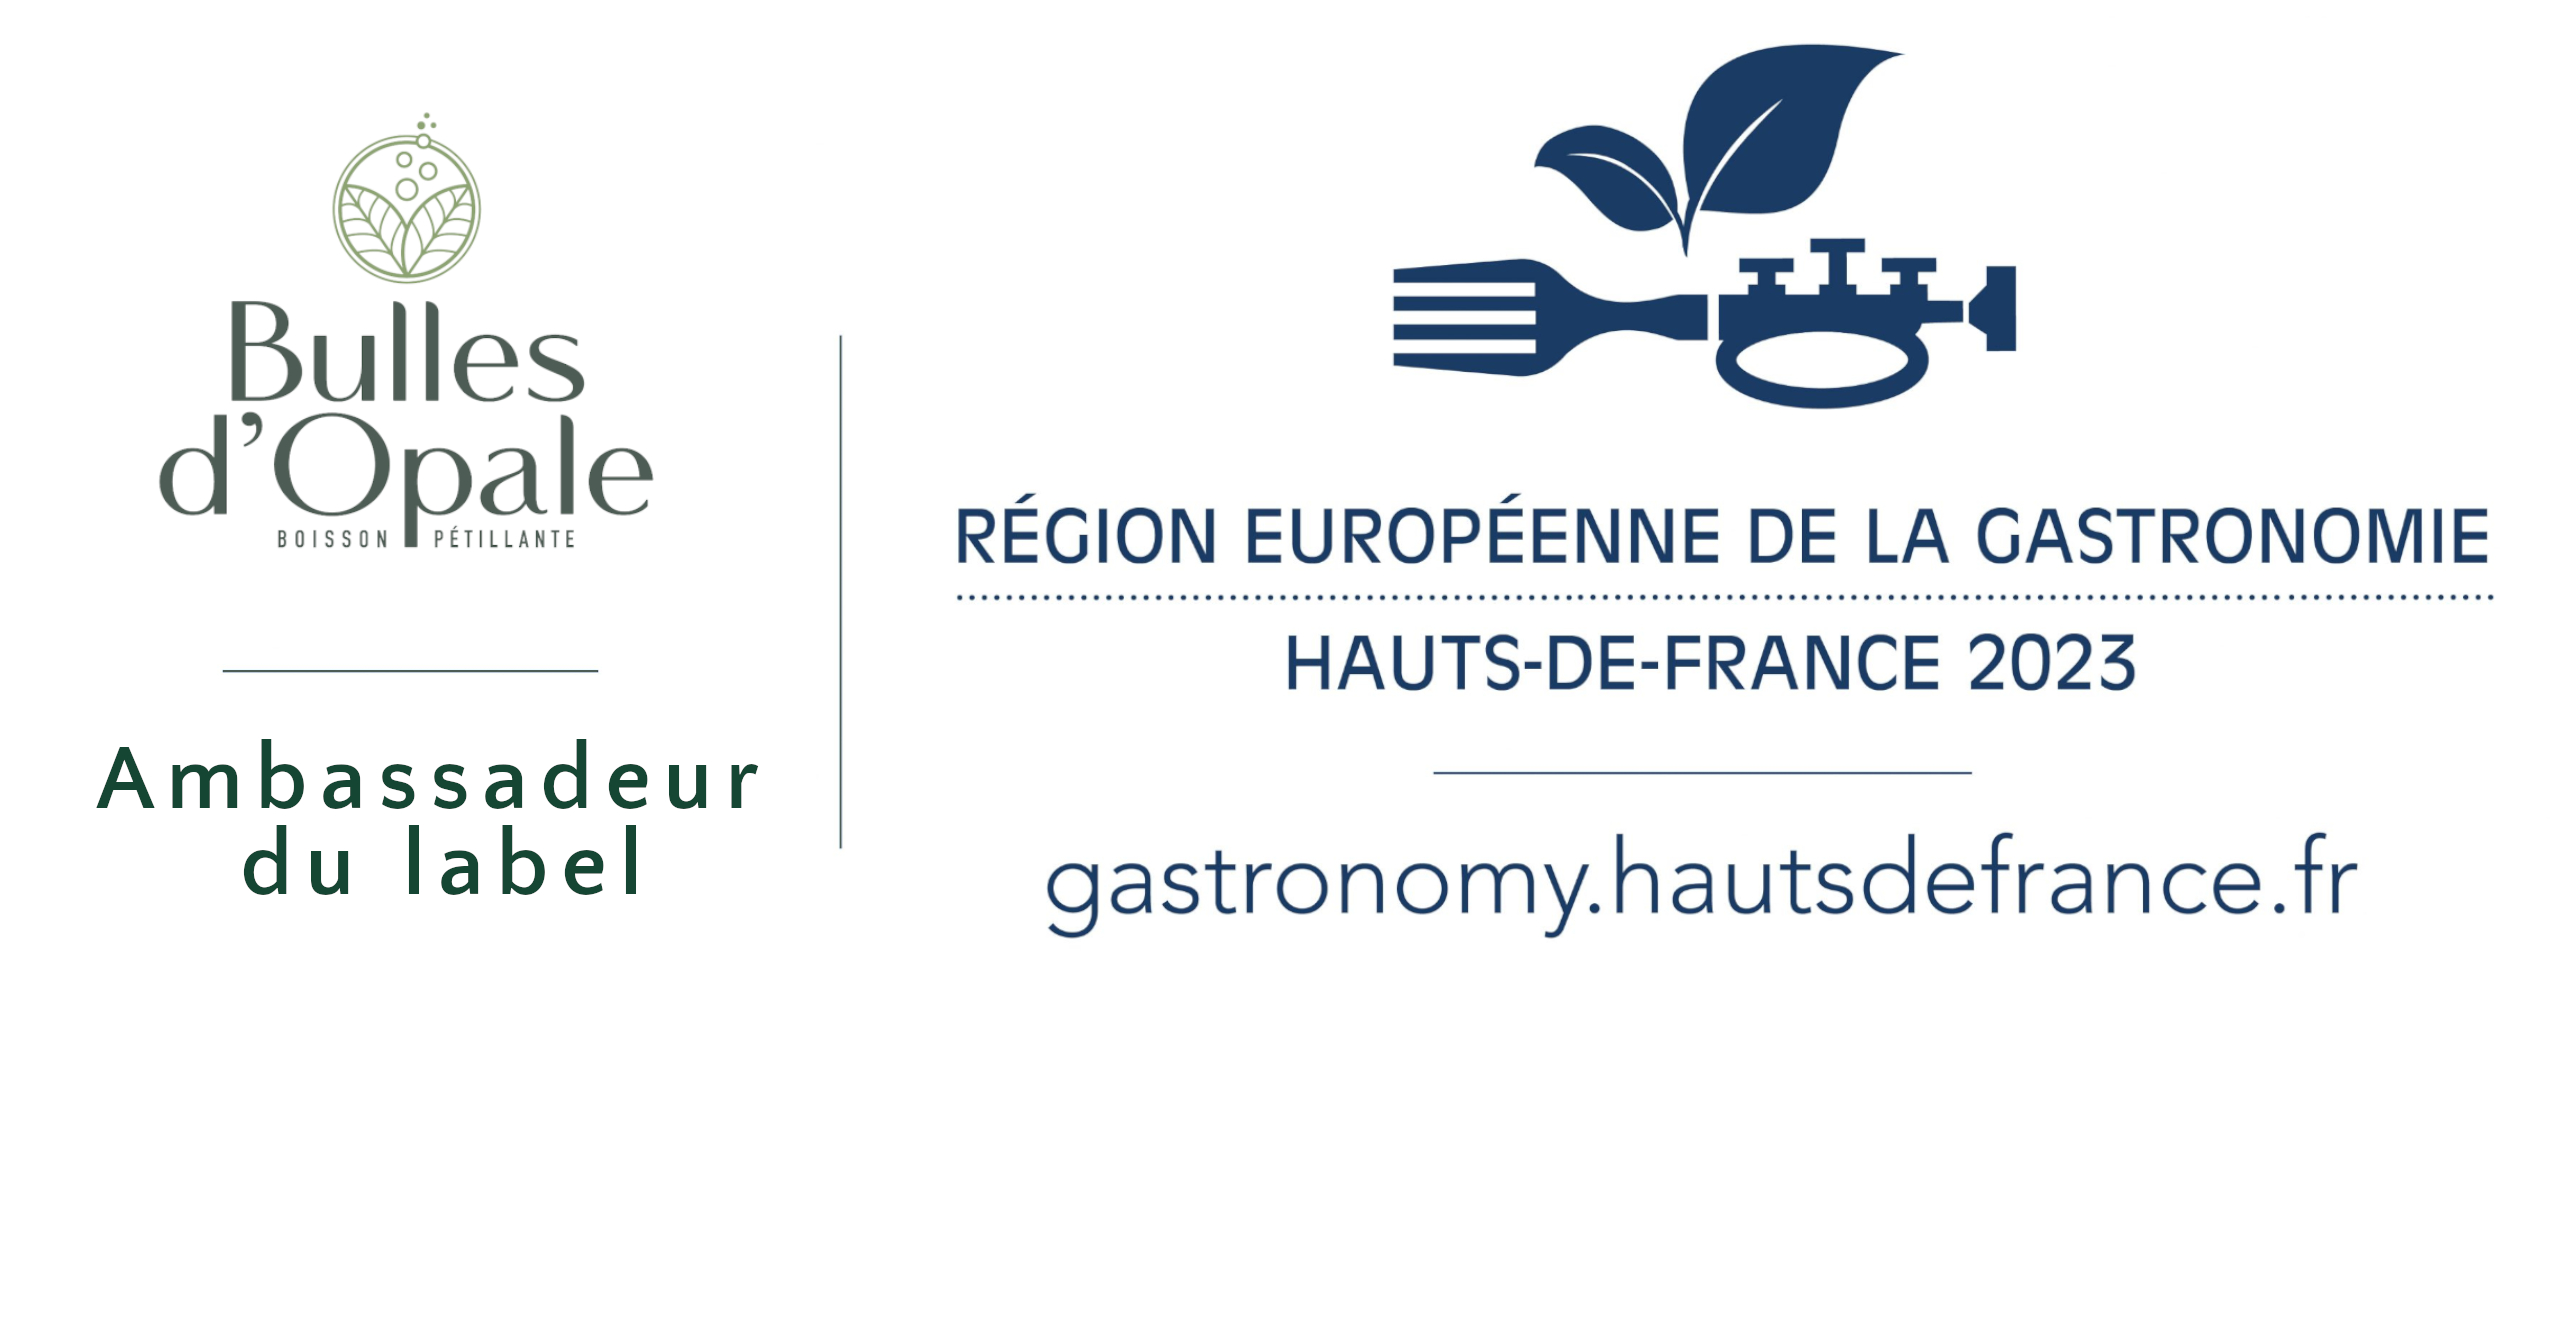 Bulles d'Opale Ambassadeur du Label Région Européenne de la Gastronomie Hauts de France